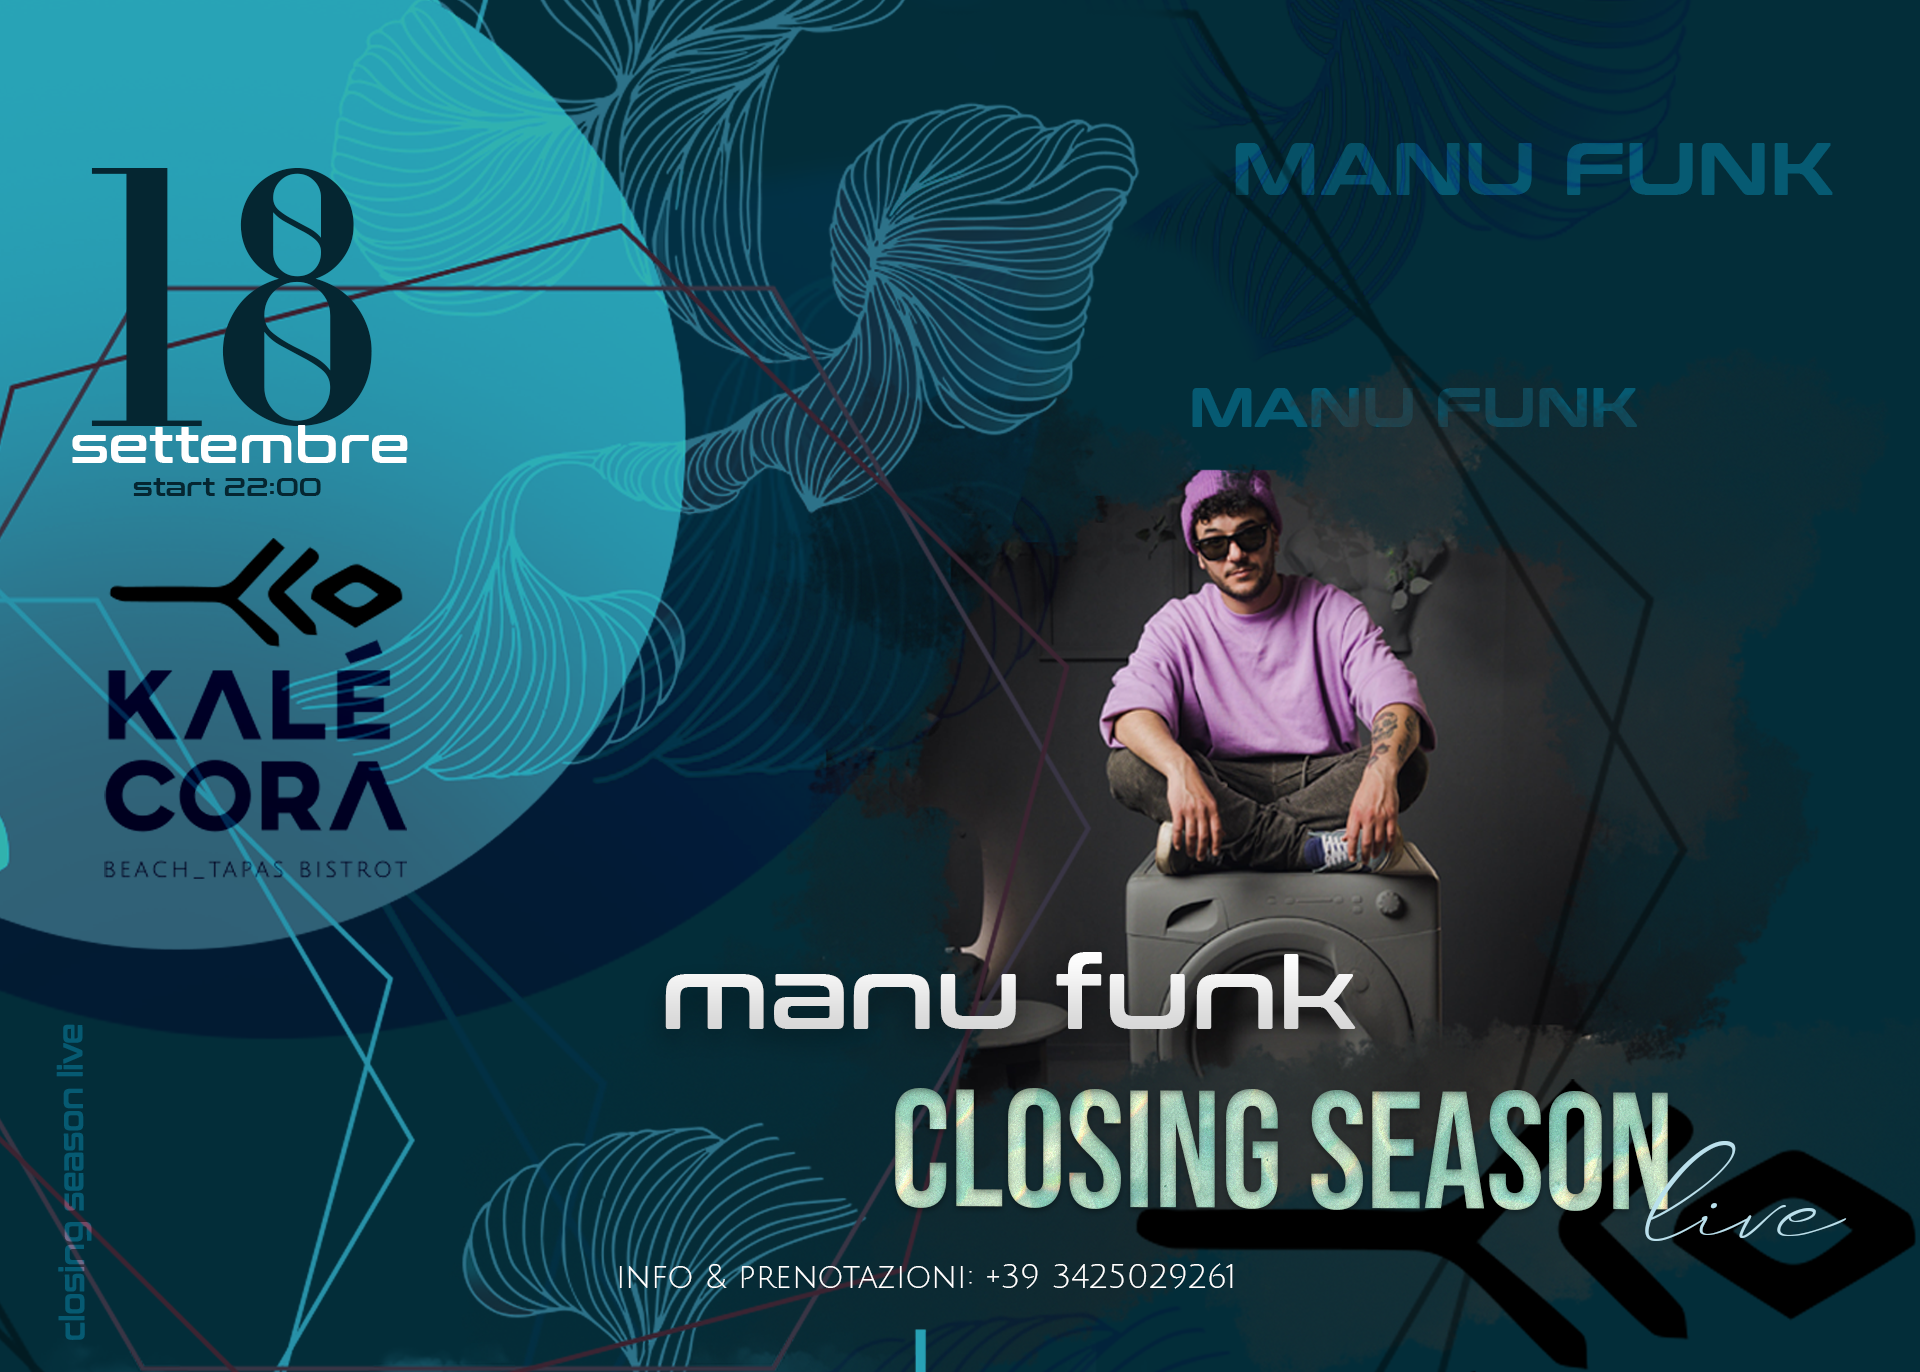 manu funk closing season live